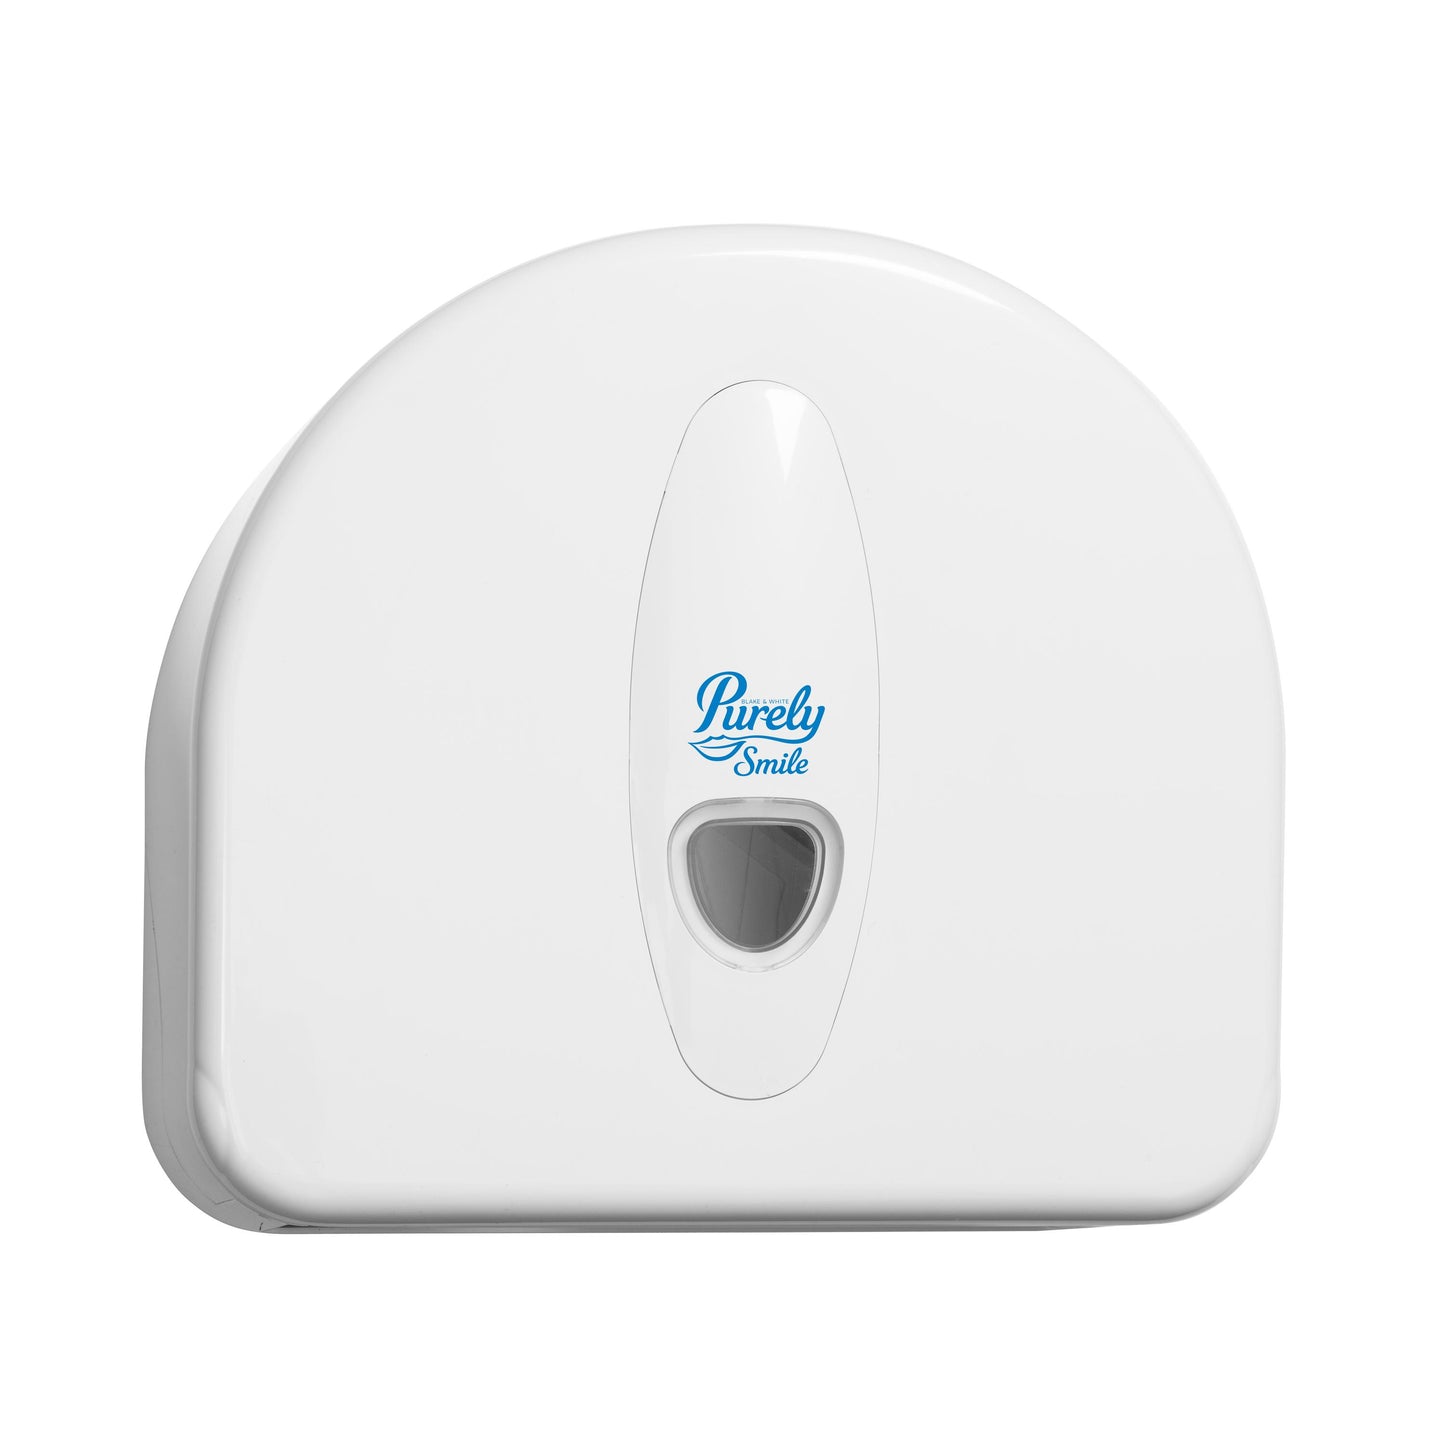 Purely Smile Jumbo Toilet Roll Plastic Dispenser White